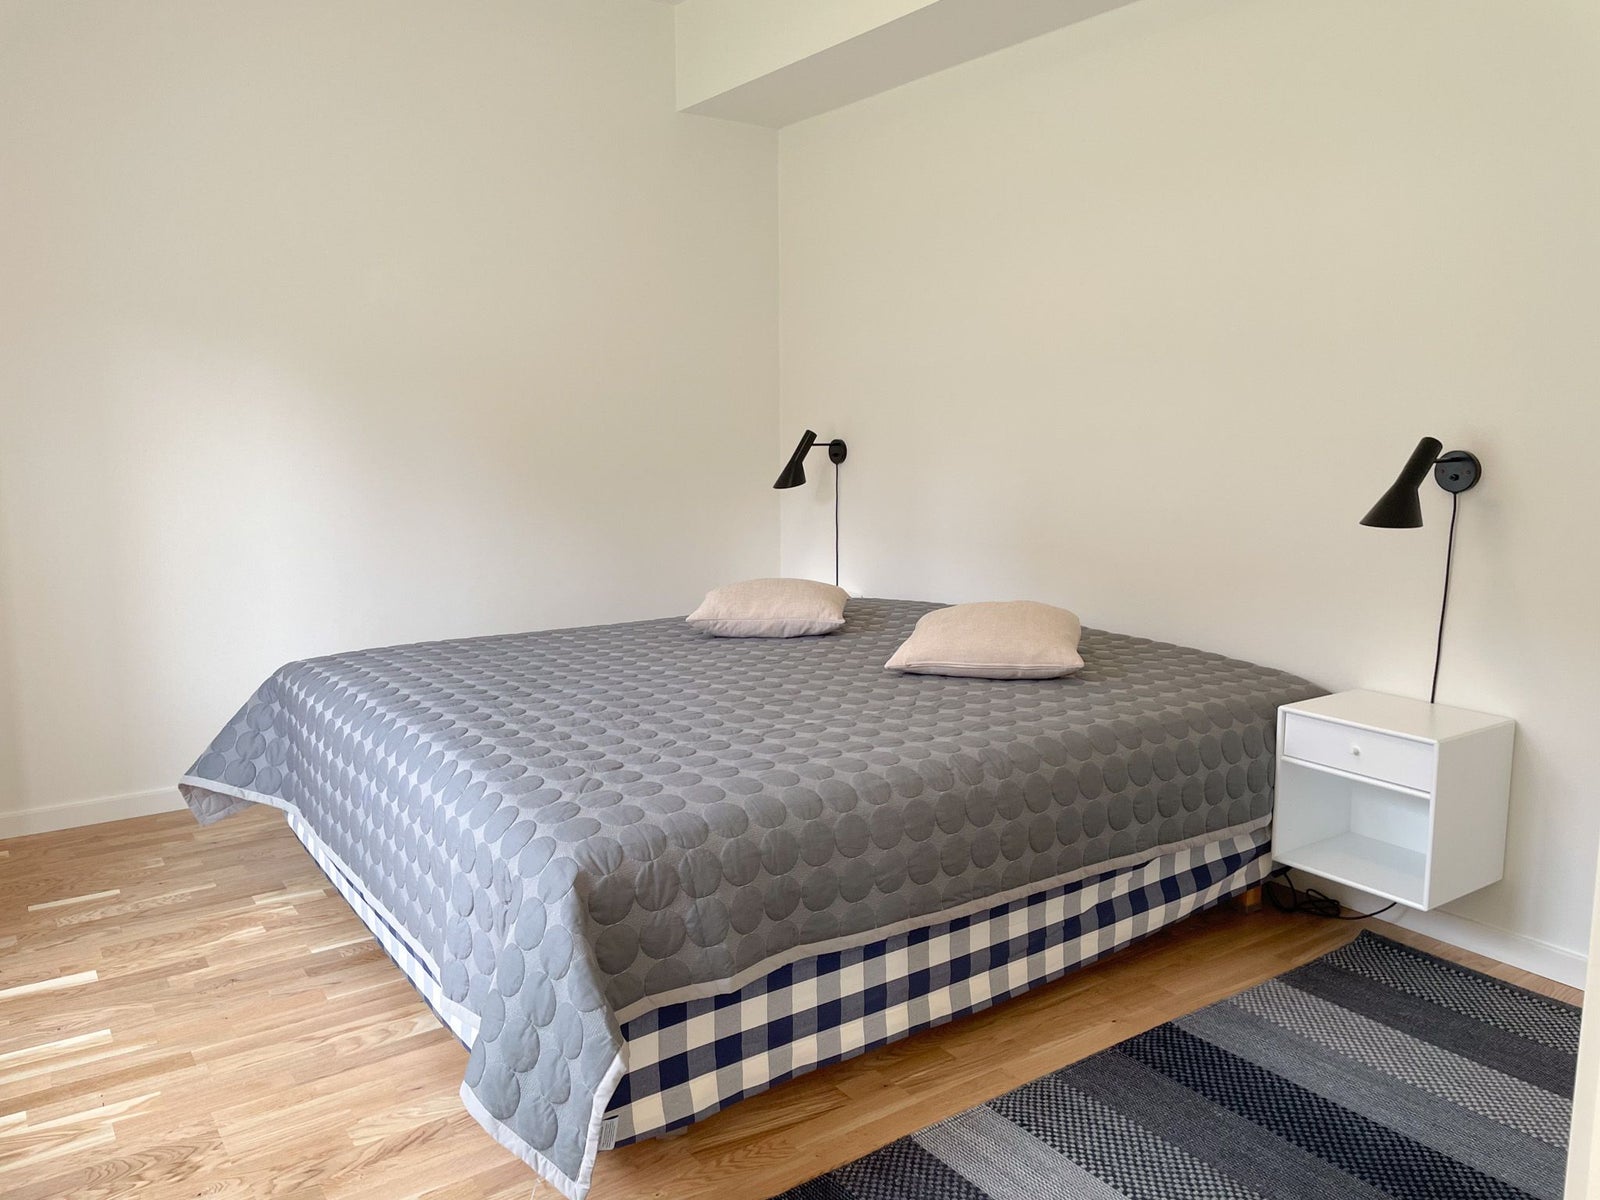 3 værelses lejlighed i Odense V 5200 på 76 kvm